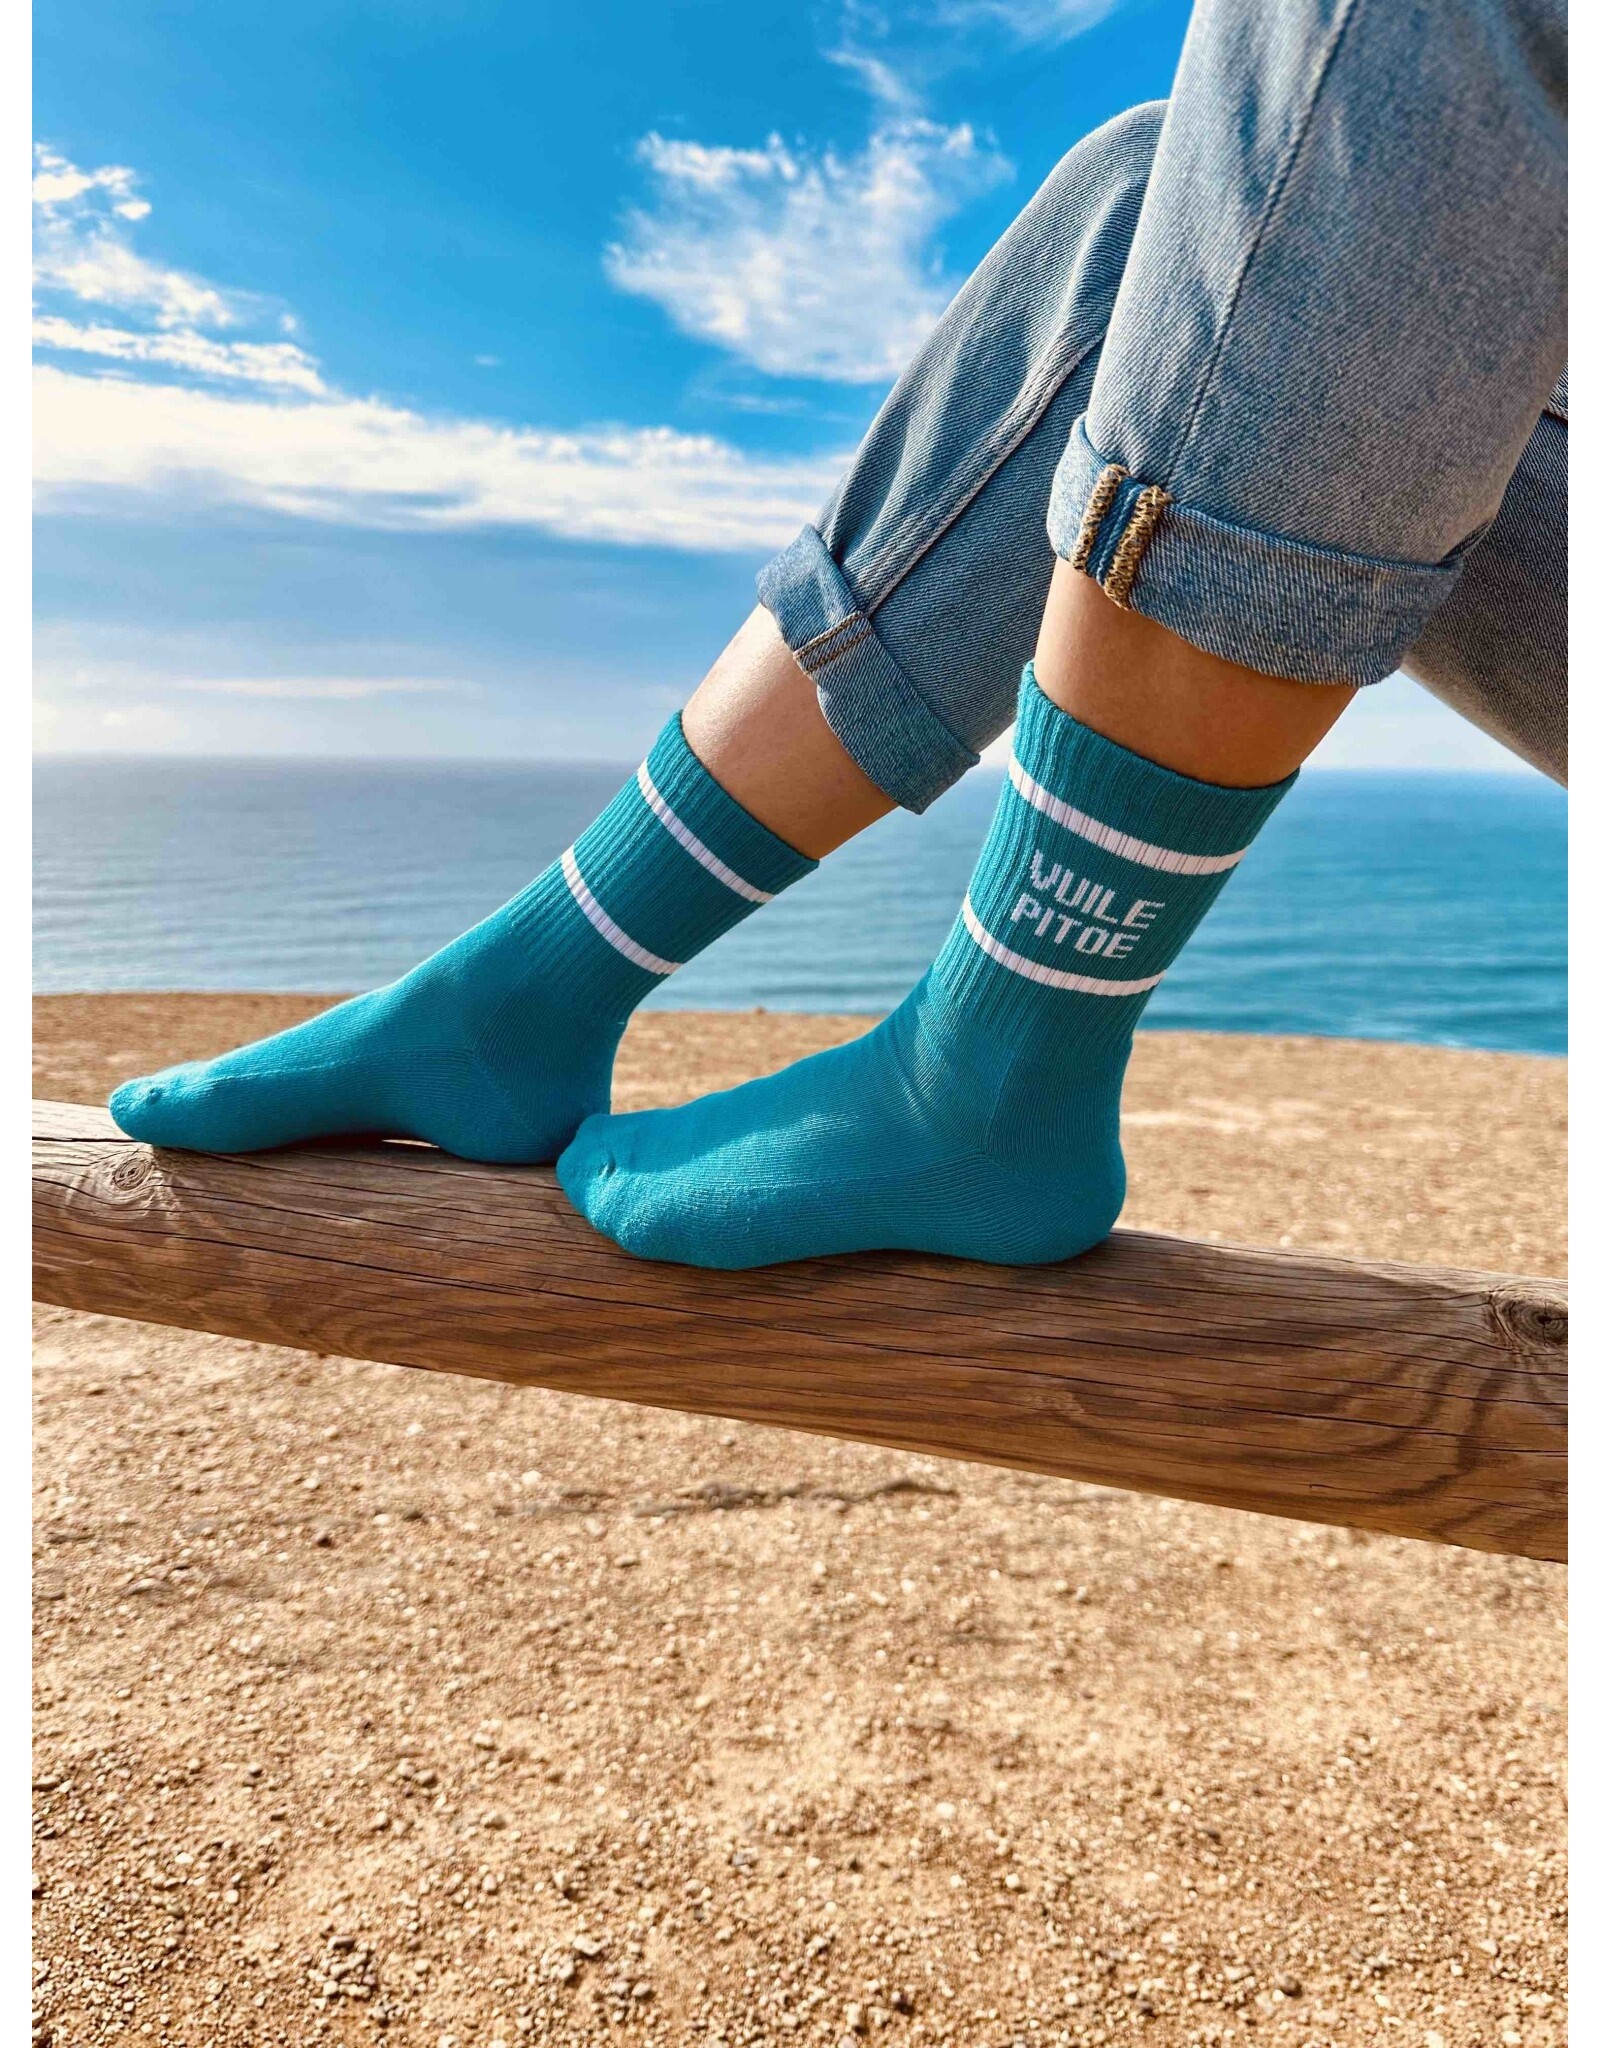 Gentse sokken Gentse sokken - Vuile pitoe - Katoen - One size